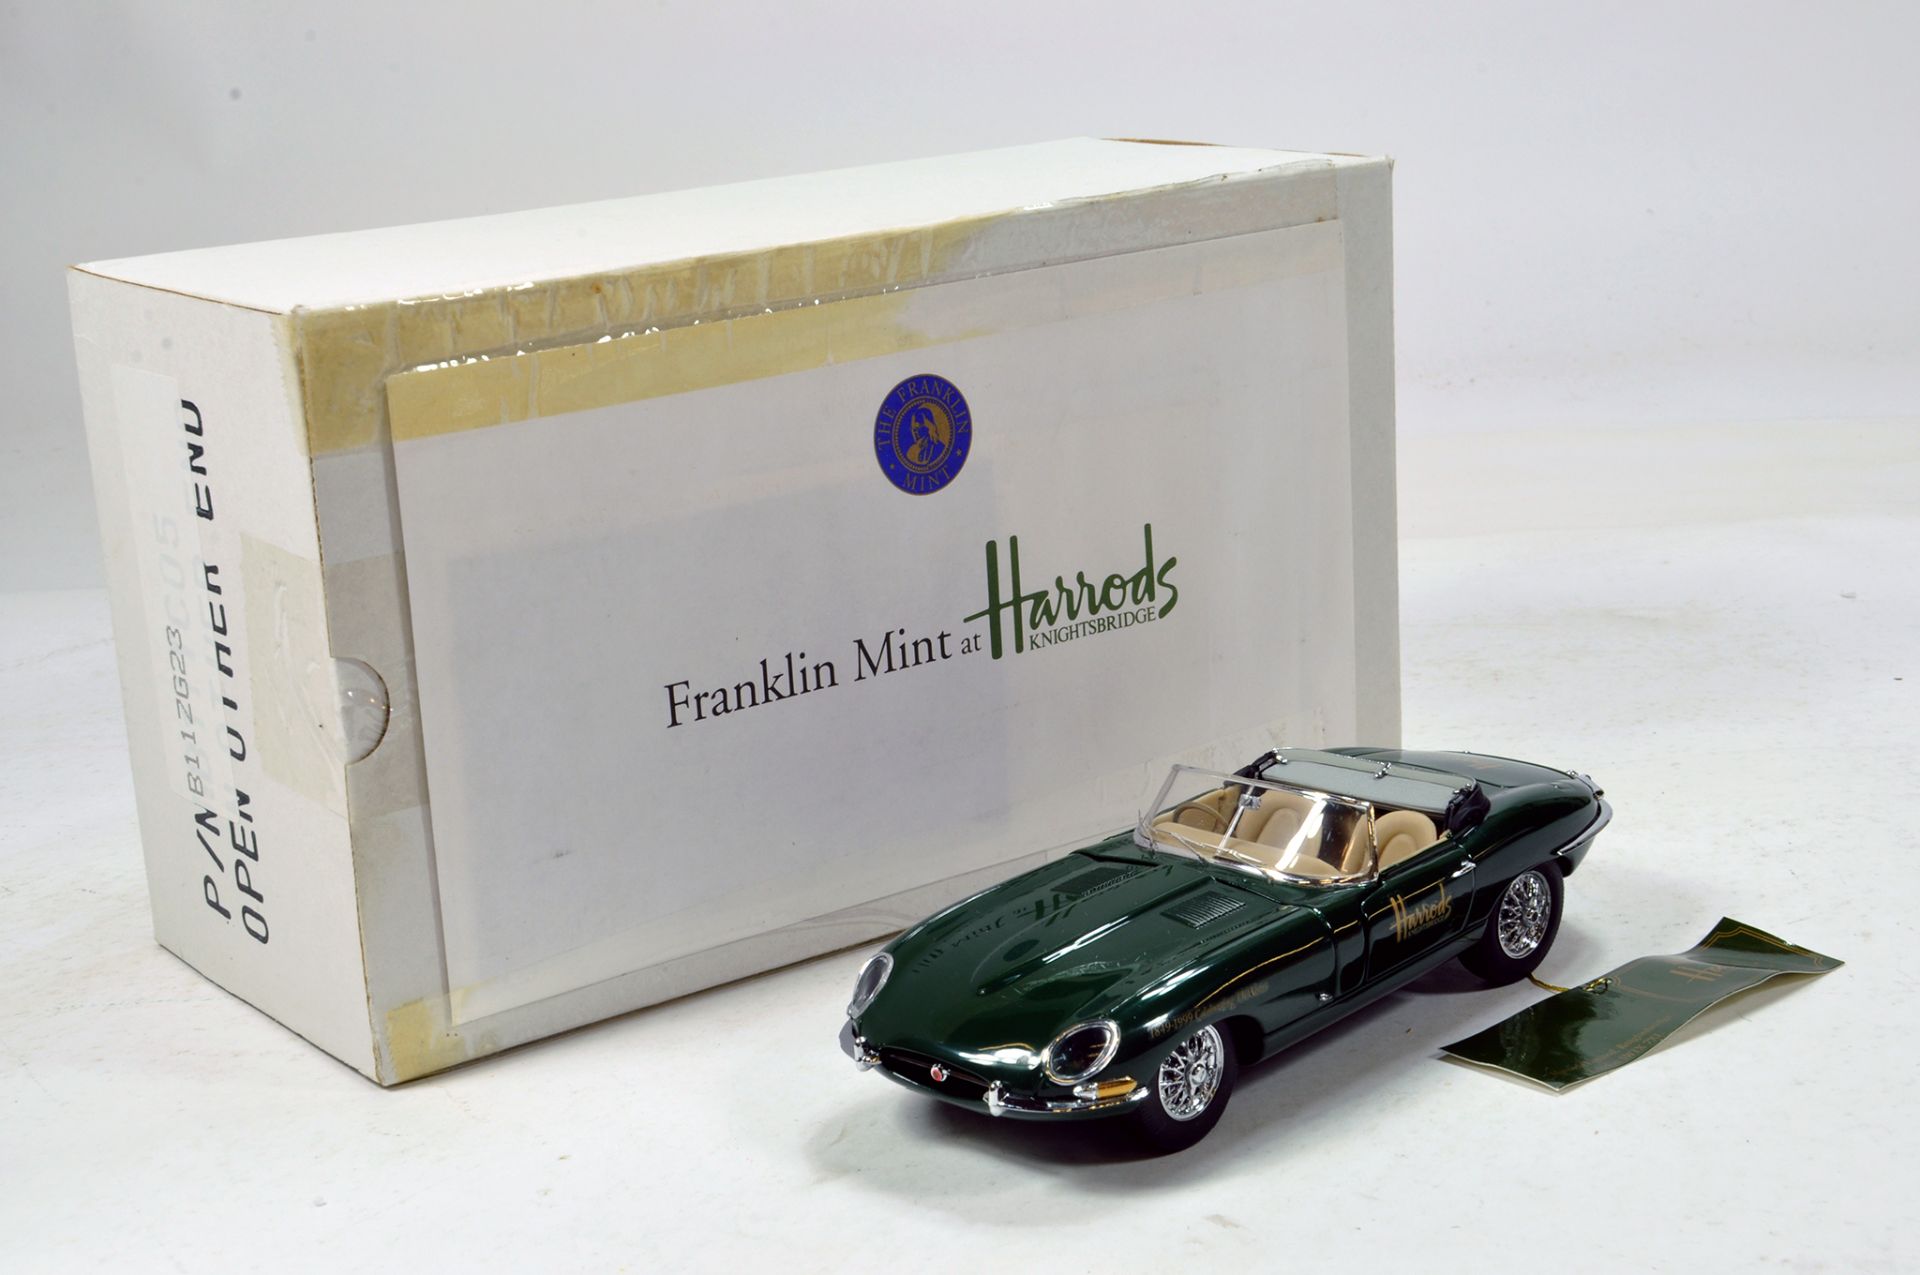 Franklin Mint 1/24 Harrods Special Edition Jaguar XKE Roadster. Impressive highly detailed piece